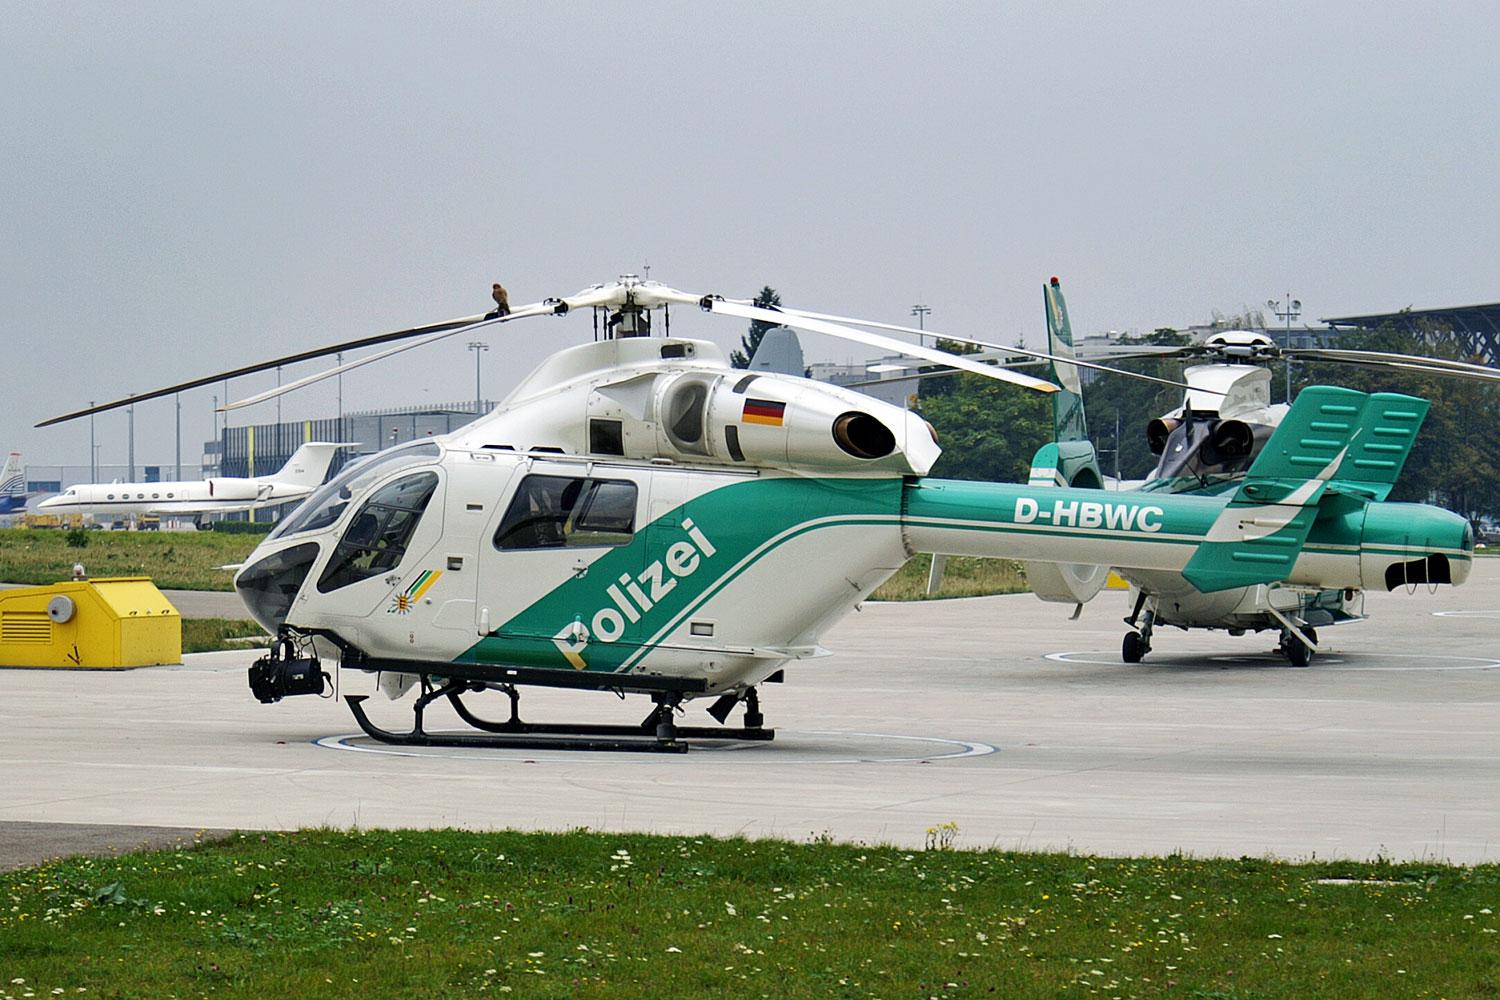 Ilyen helikoptereket vett a magyar állam 